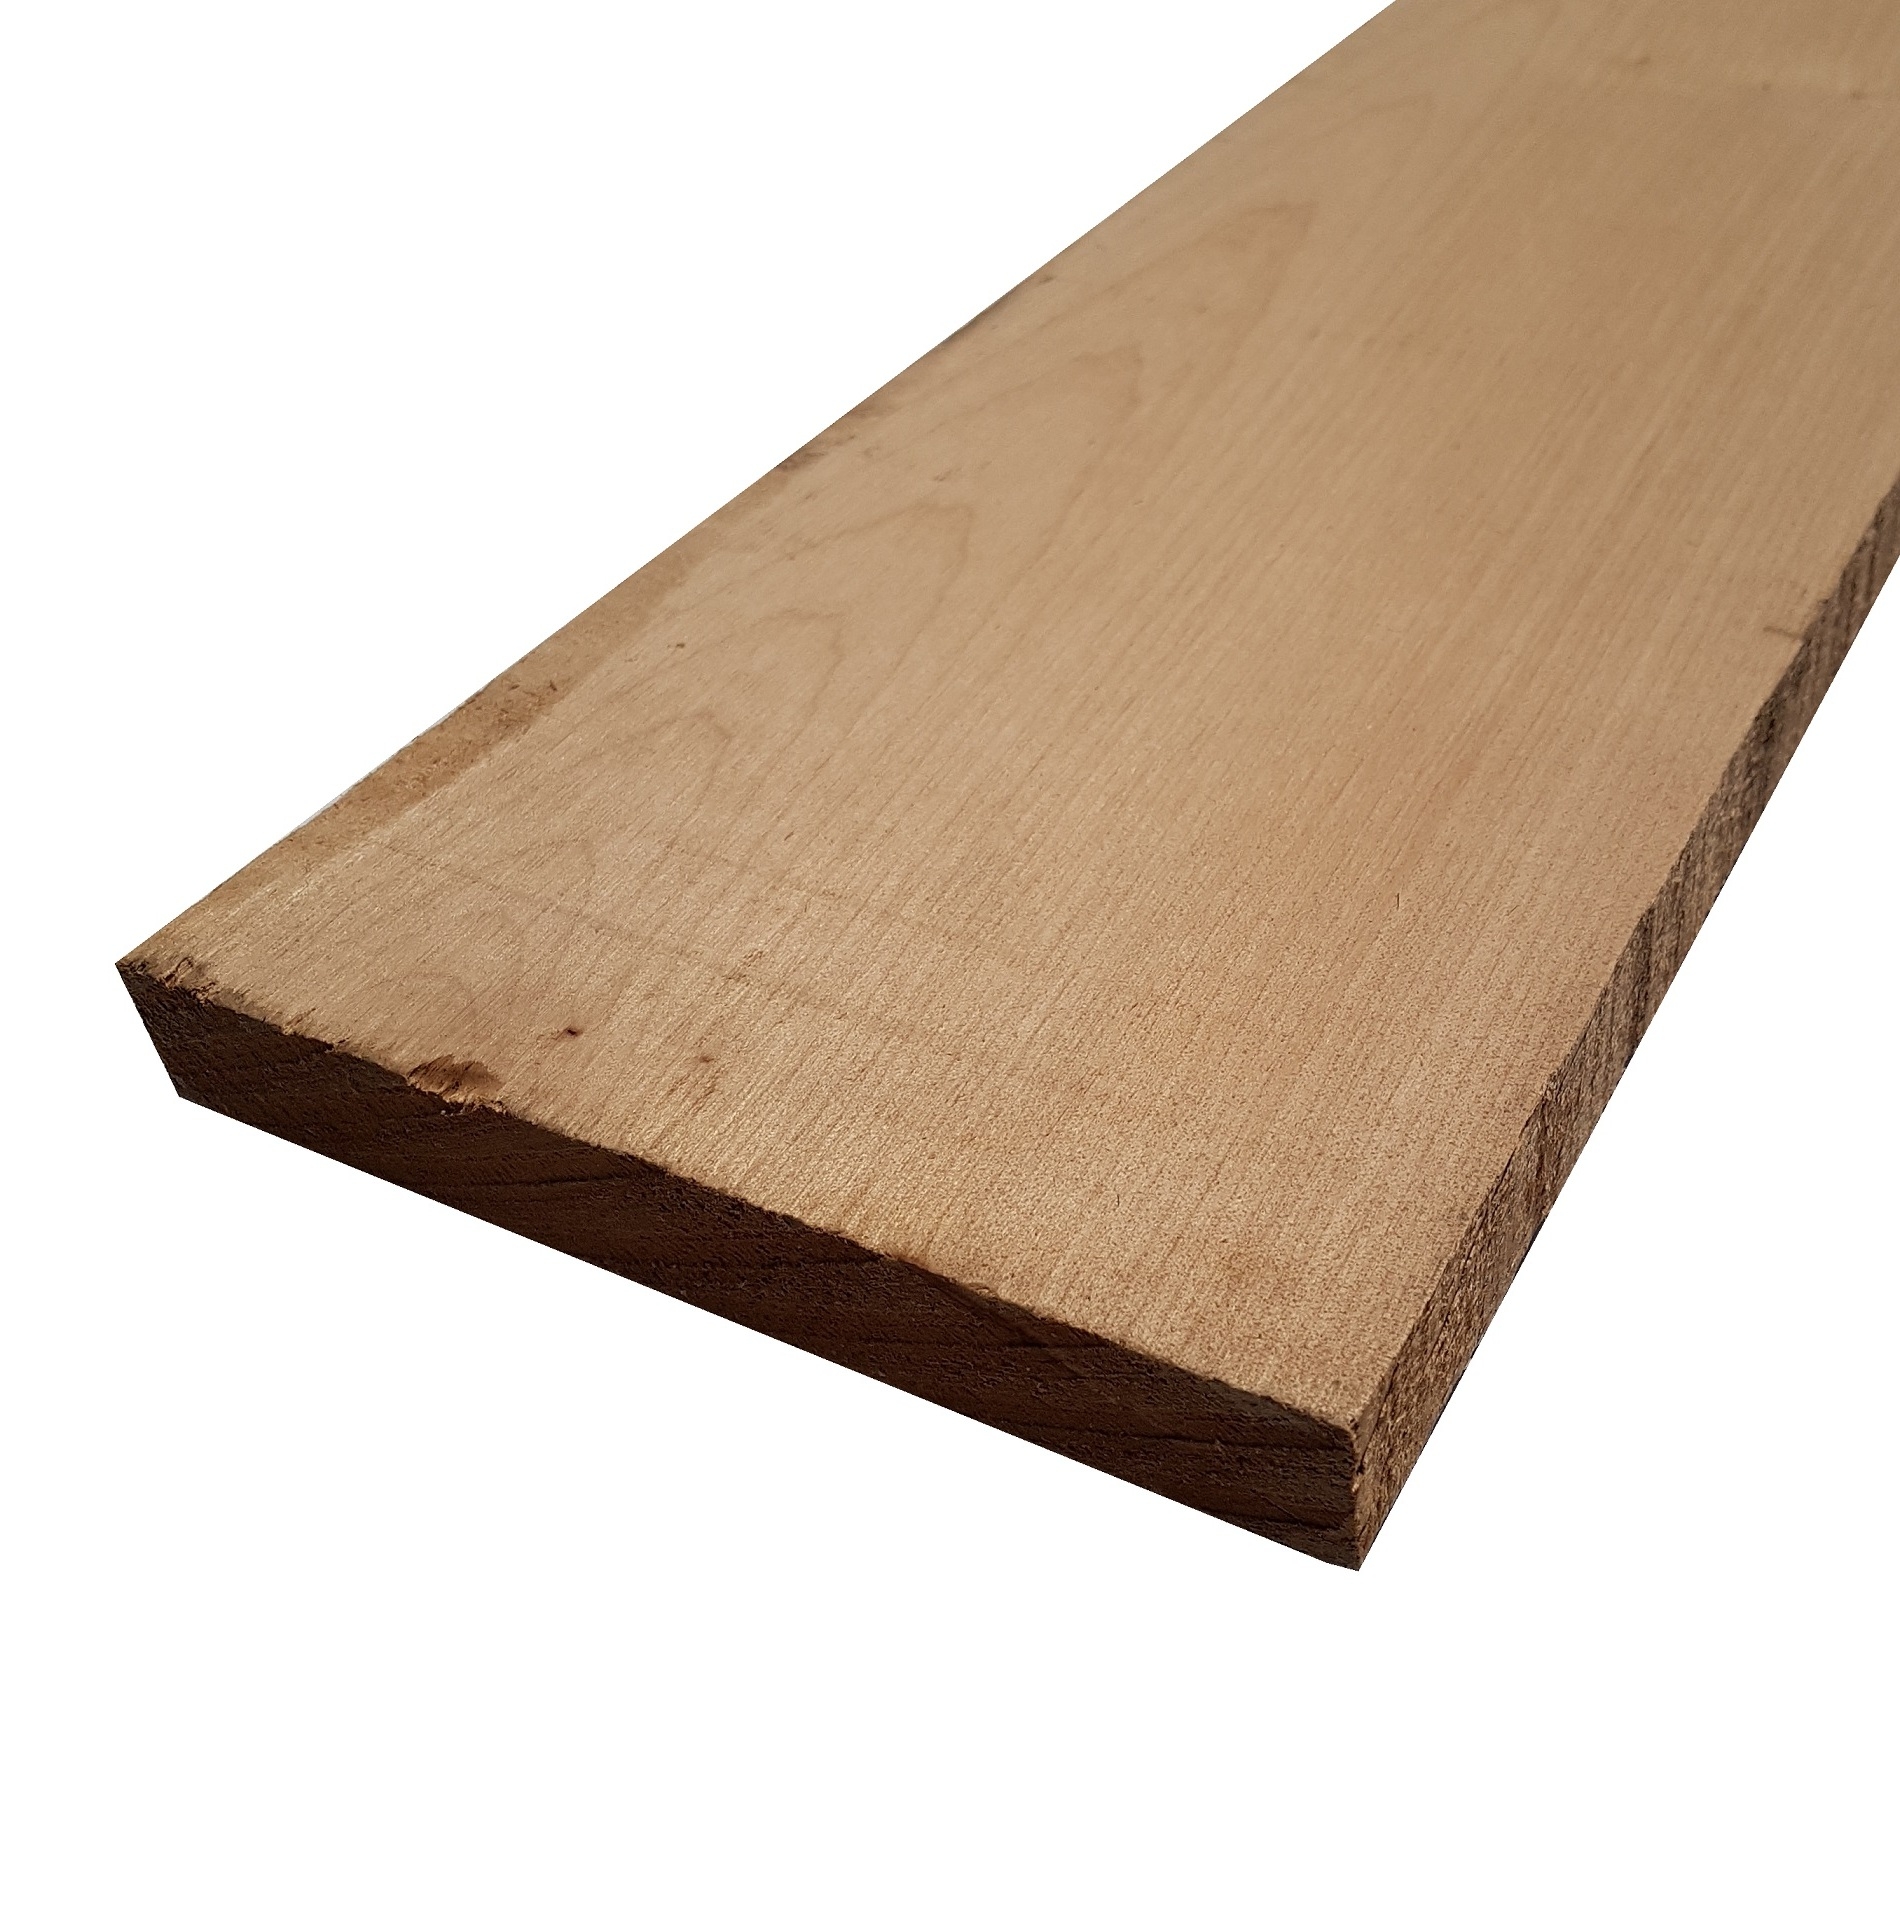 Tavola legno di Acero Pacific Coast Maple Calibrato refilato grezzo mm 38 x 100 x 1350